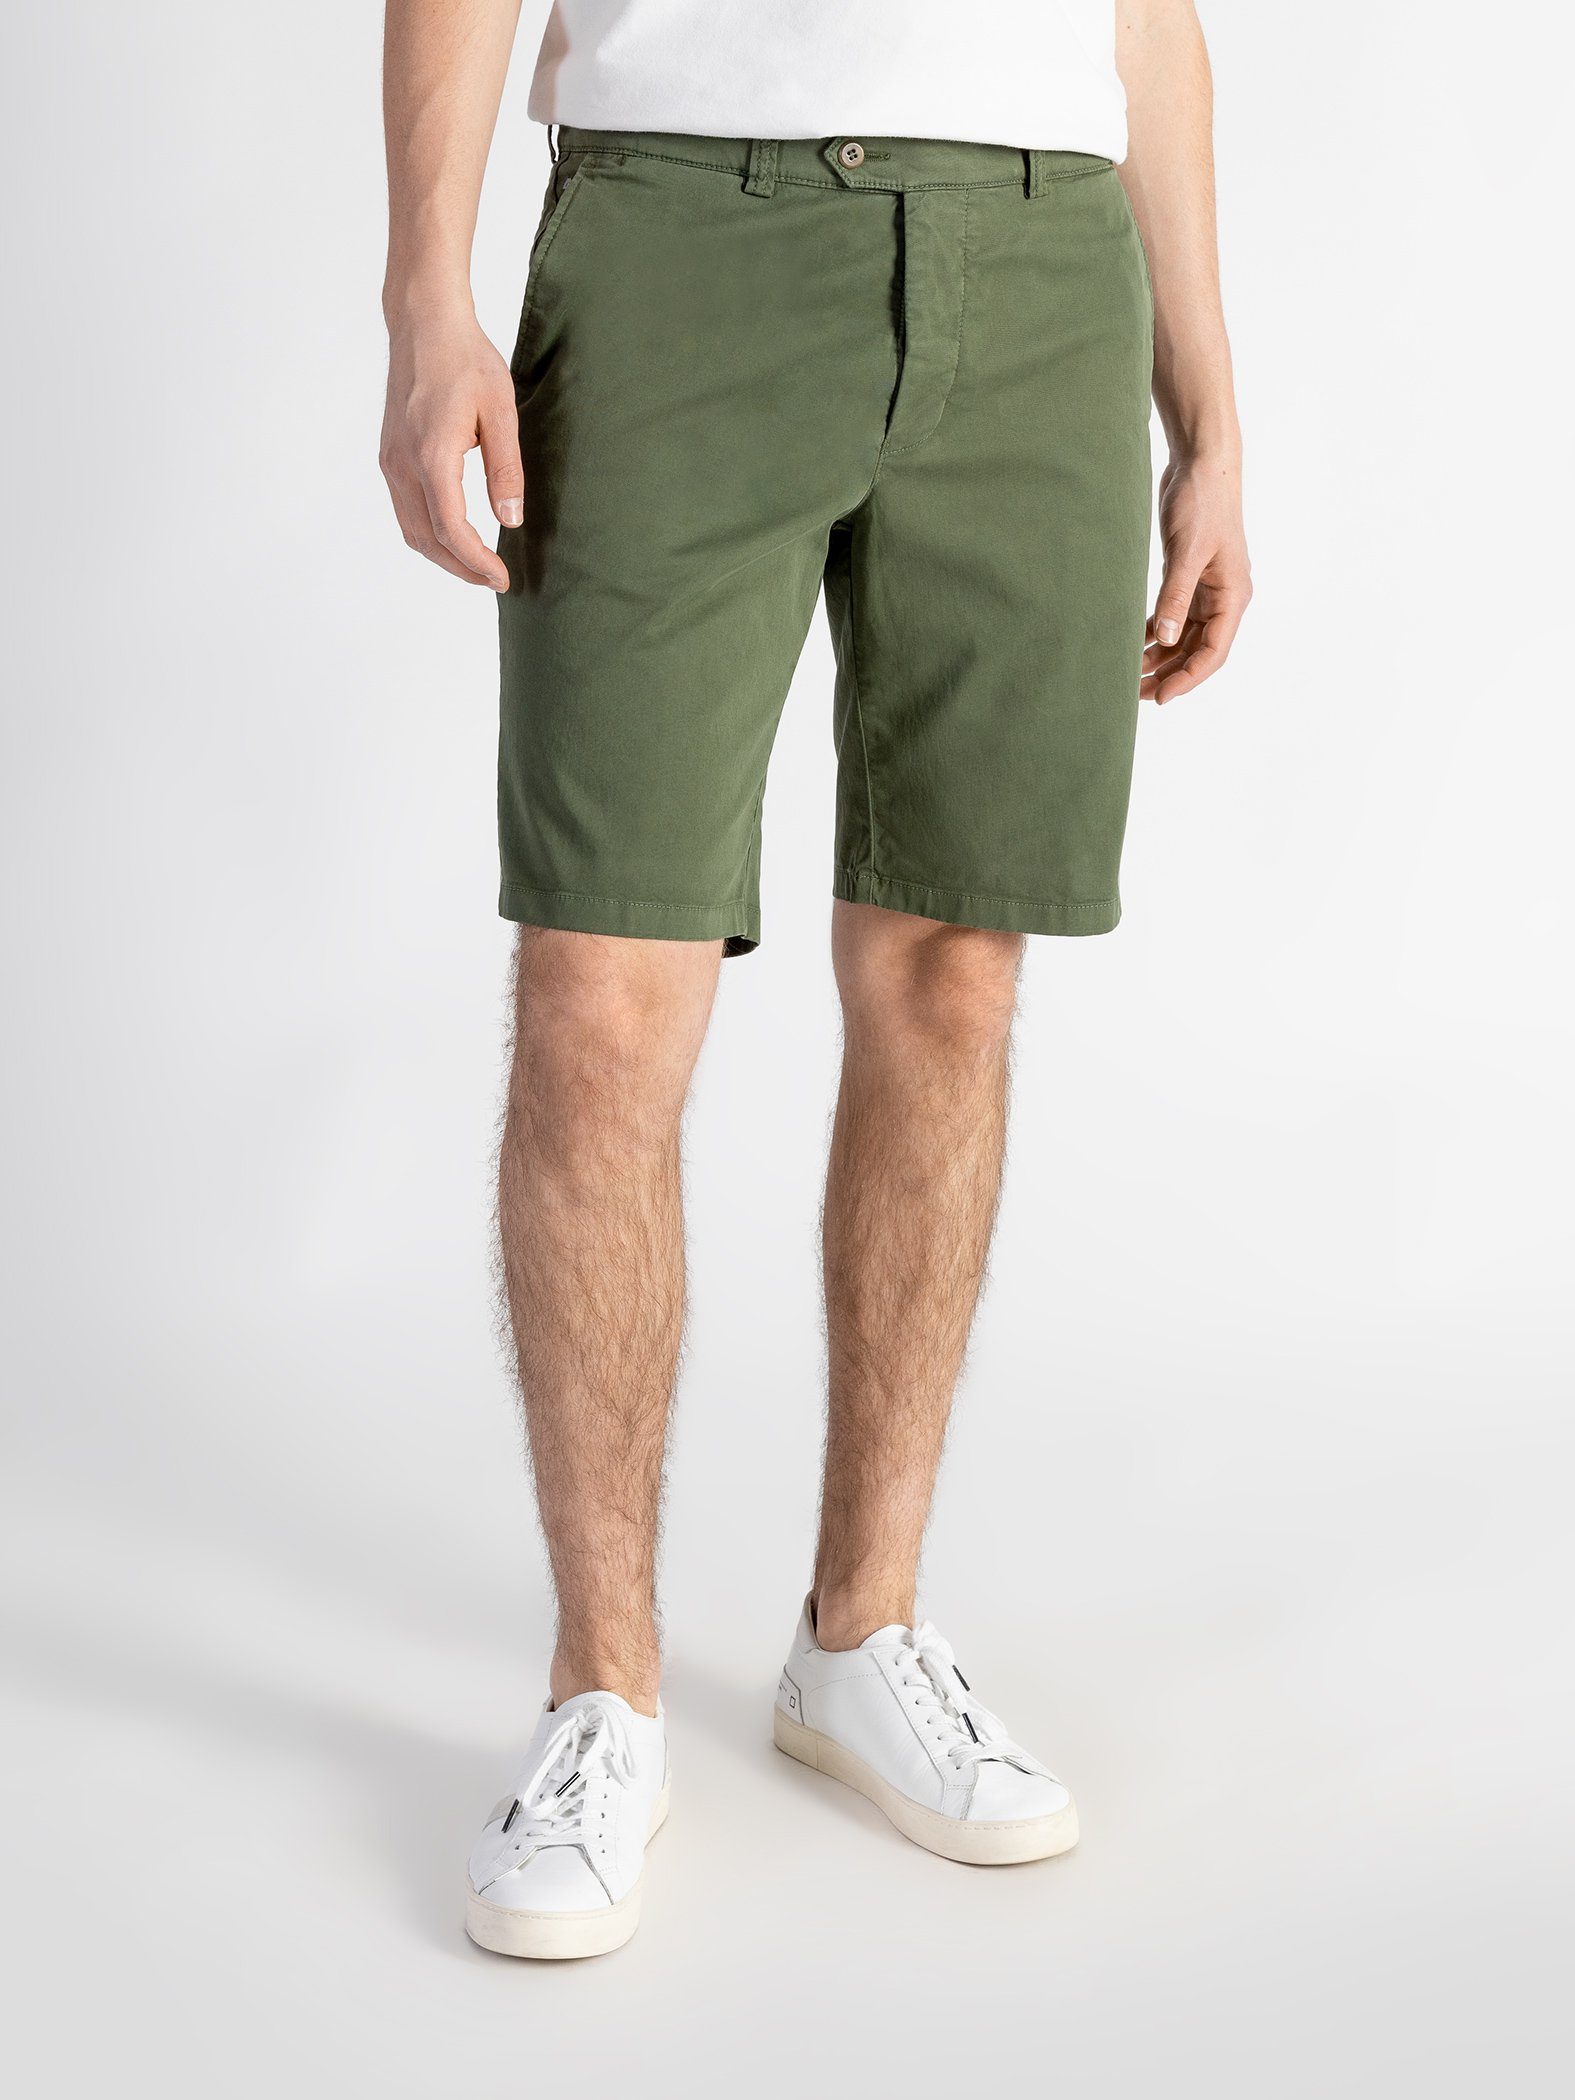 TwoMates Shorts Shorts mit Bund, Farbauswahl, elastischem Grün GOTS-zertifiziert